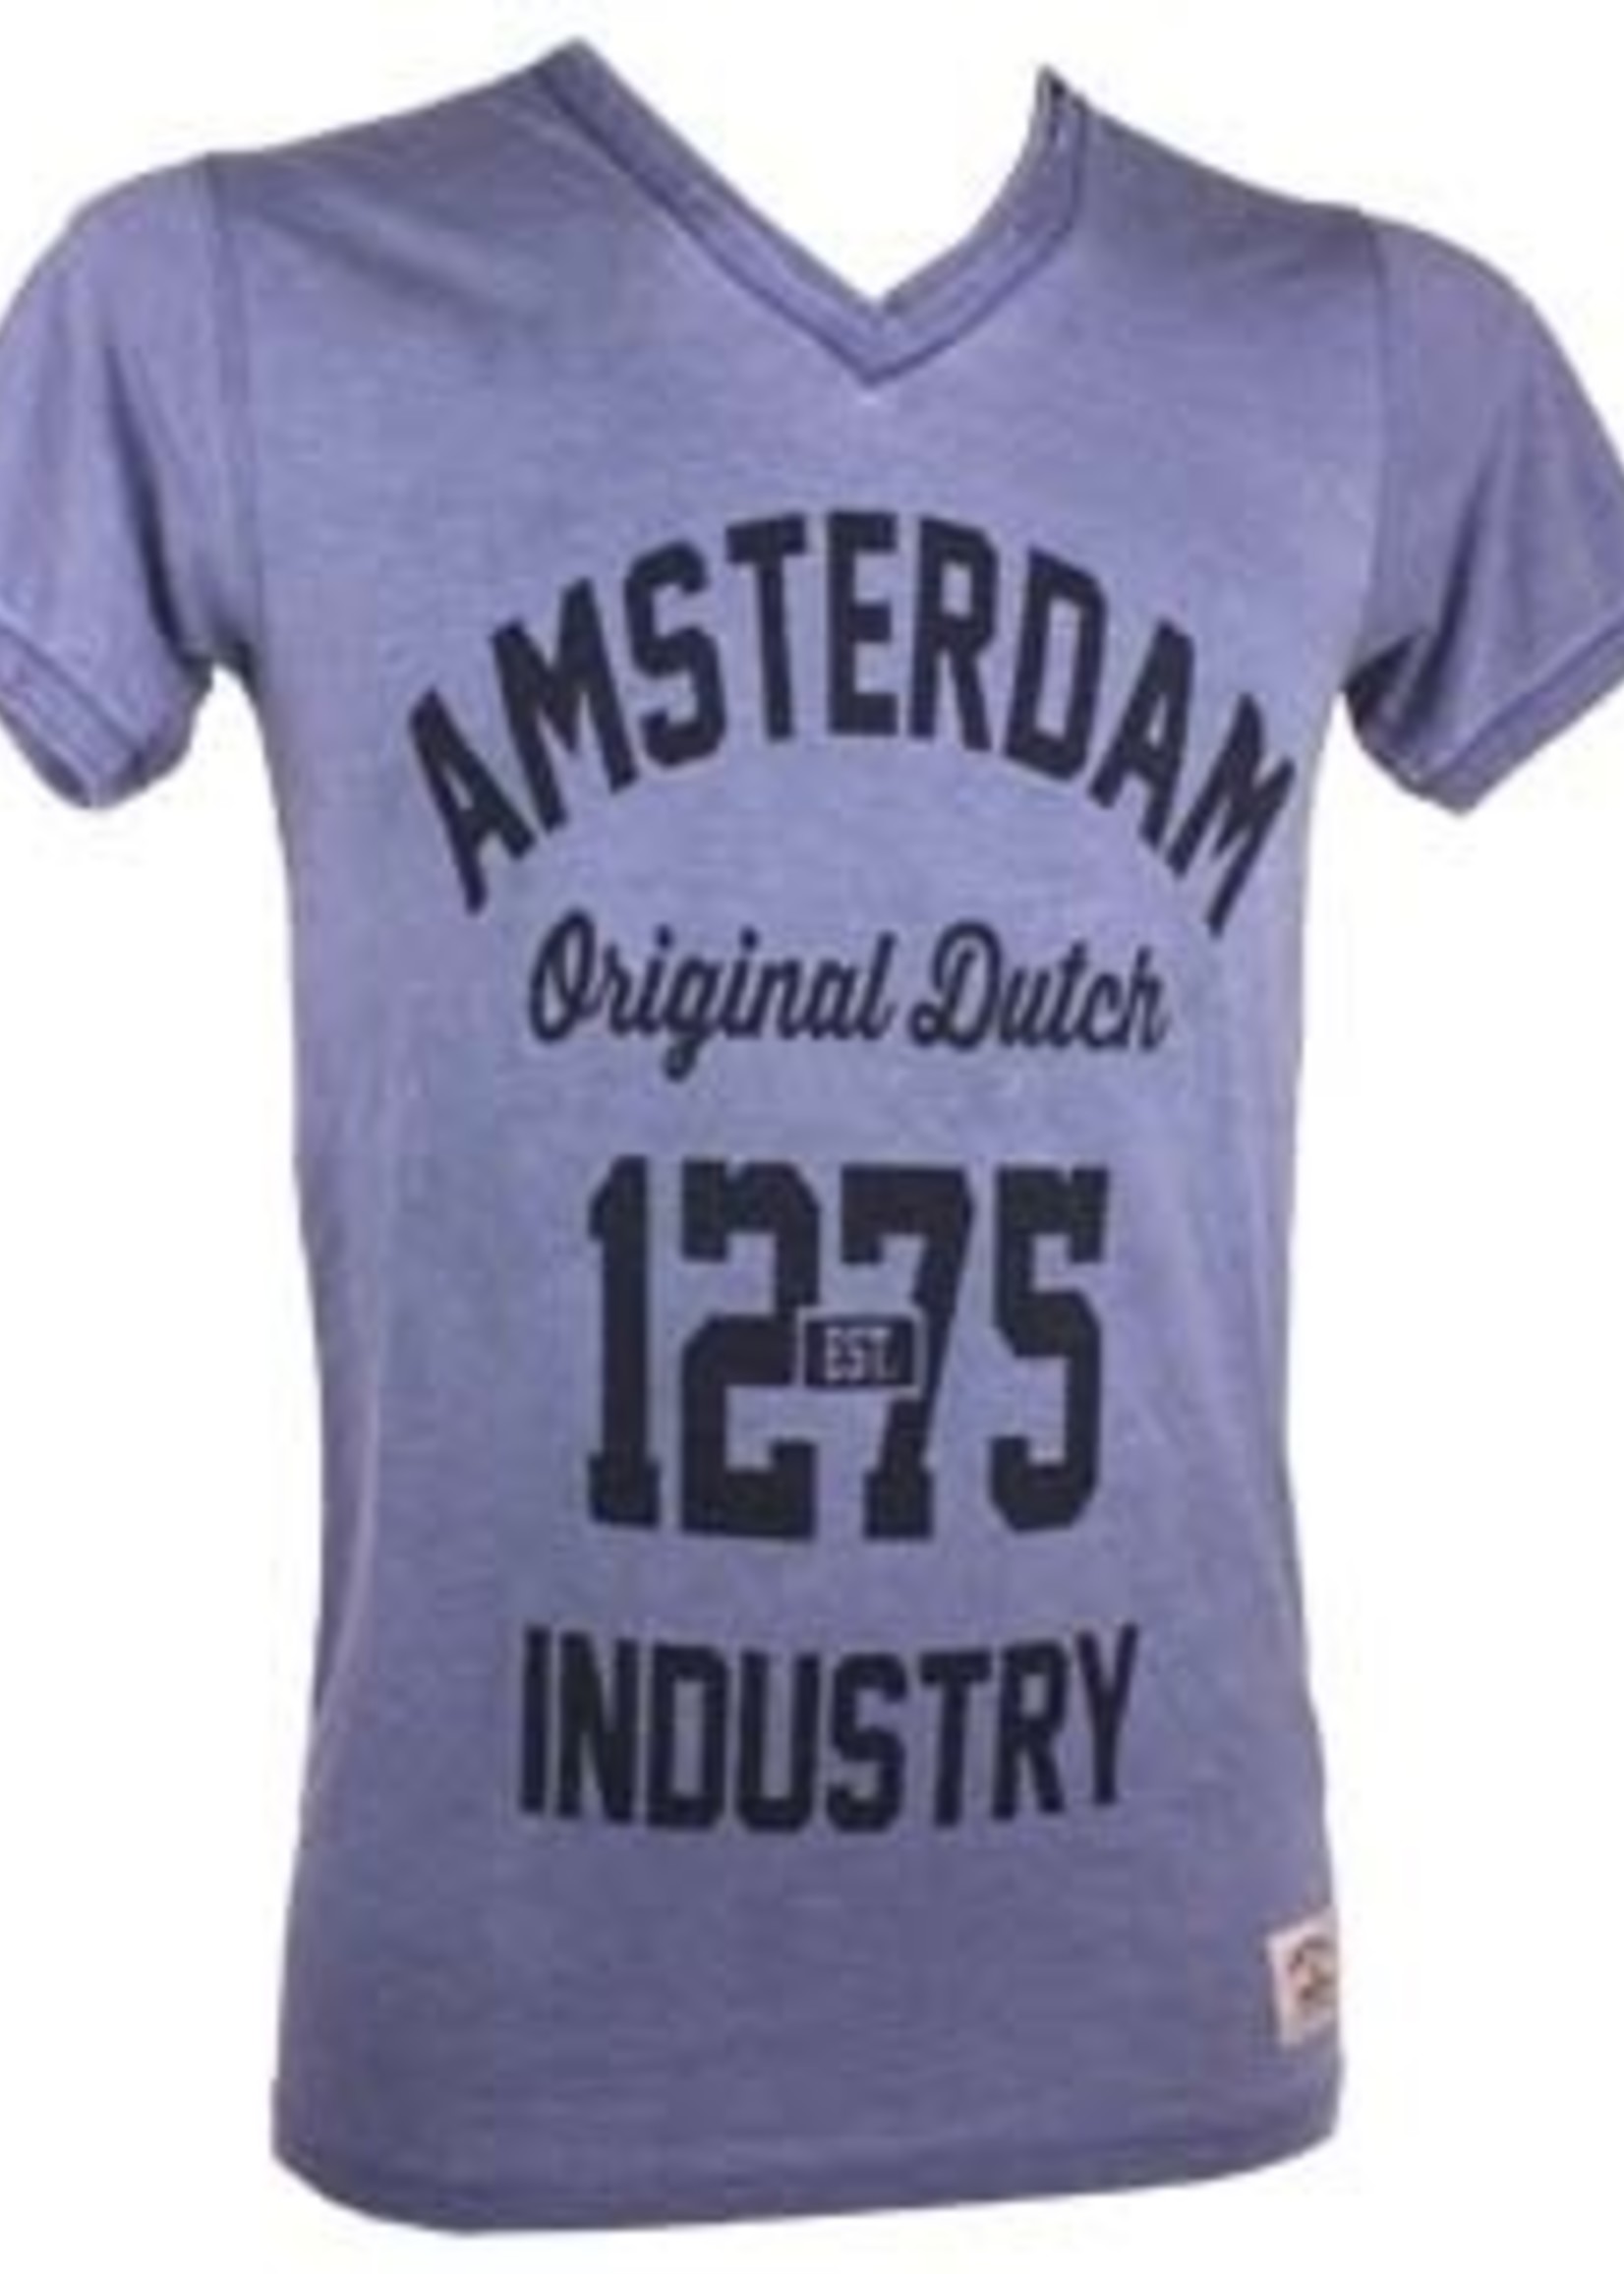 T-shirt Amsterdam burnout Groen